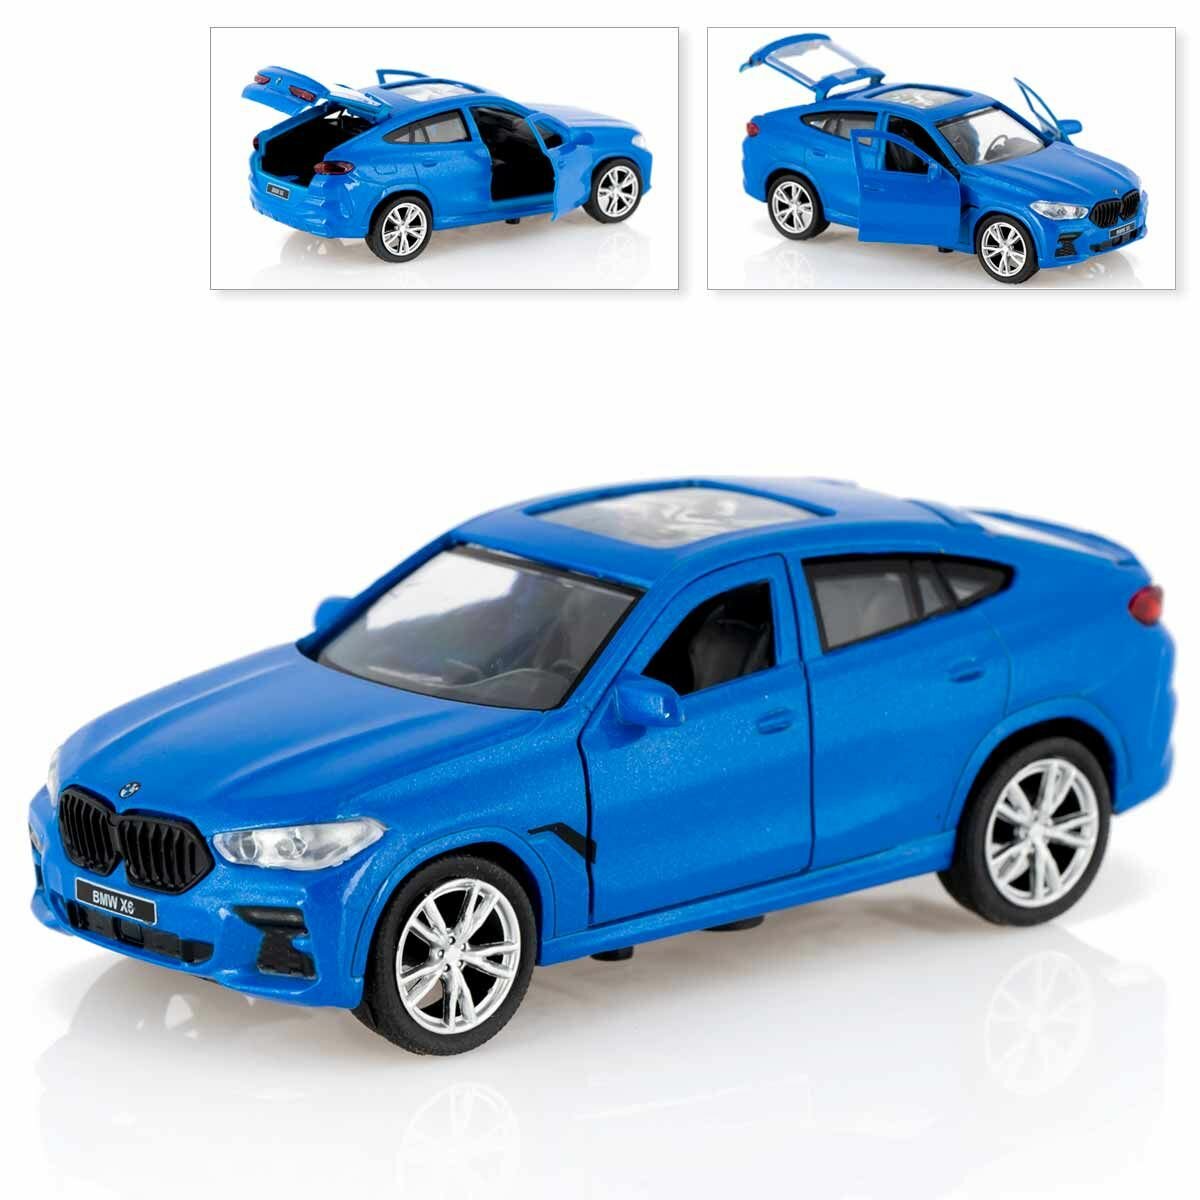 Машинка BMW X6, коллекционная, металлическая, синяя, Технопарк, 12 см